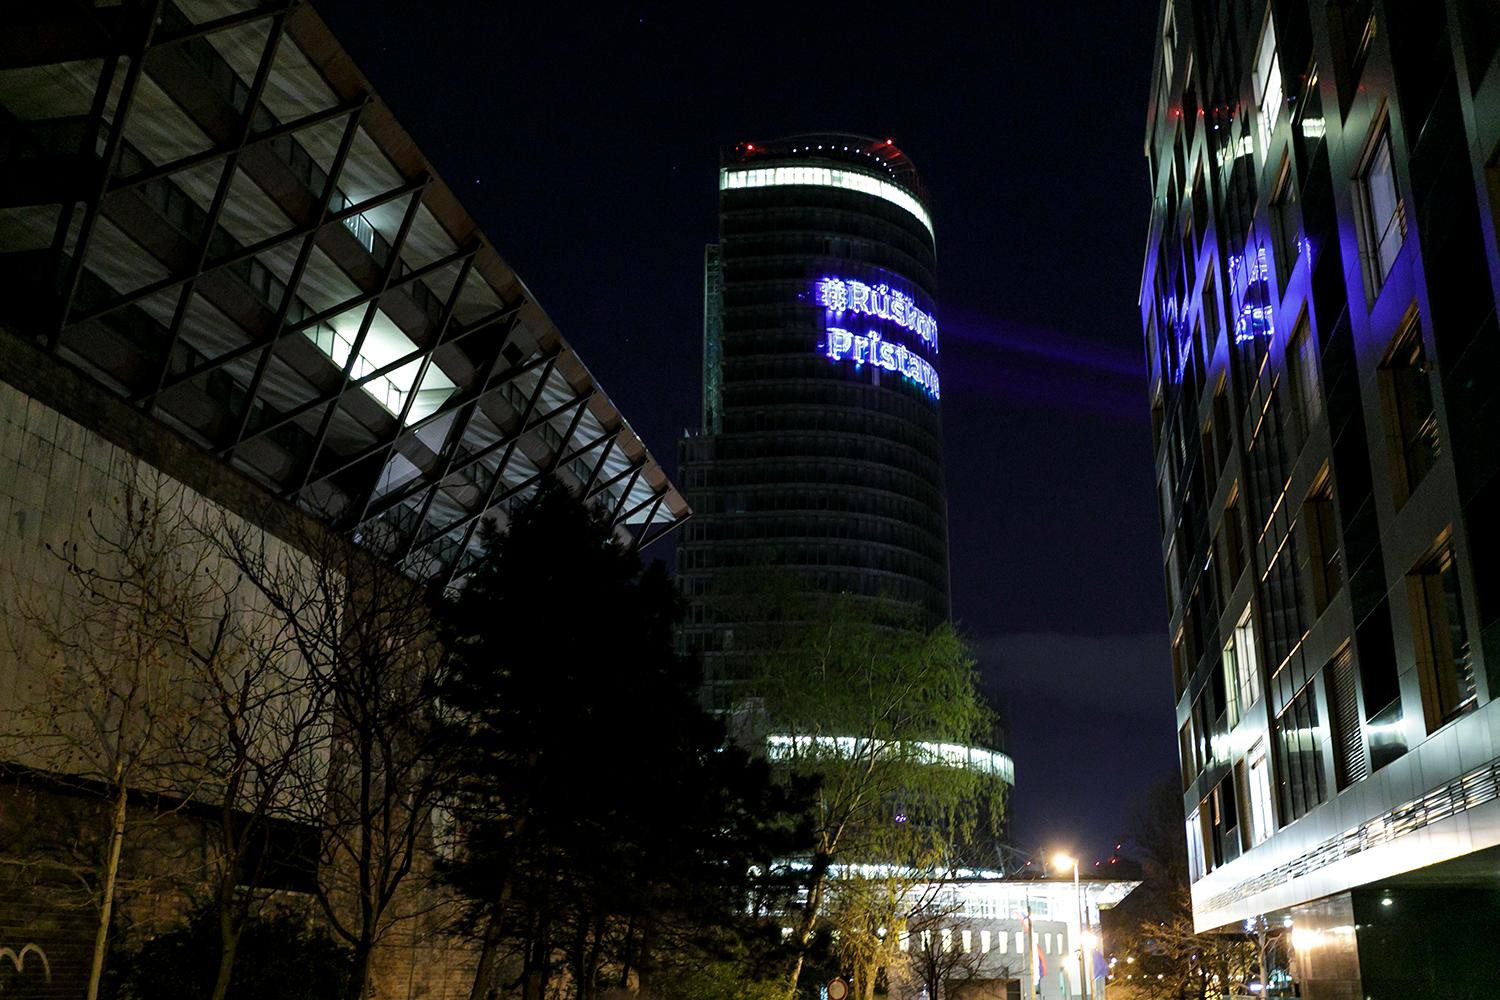 23. marec 2020 Bratislava: Budova Národnej banky Slovenska so svetelným nápisom Rúško ti pristane. Pandémia spôsobila veľký ekonomický problém a riešením bolo ďalšie zadlženie.